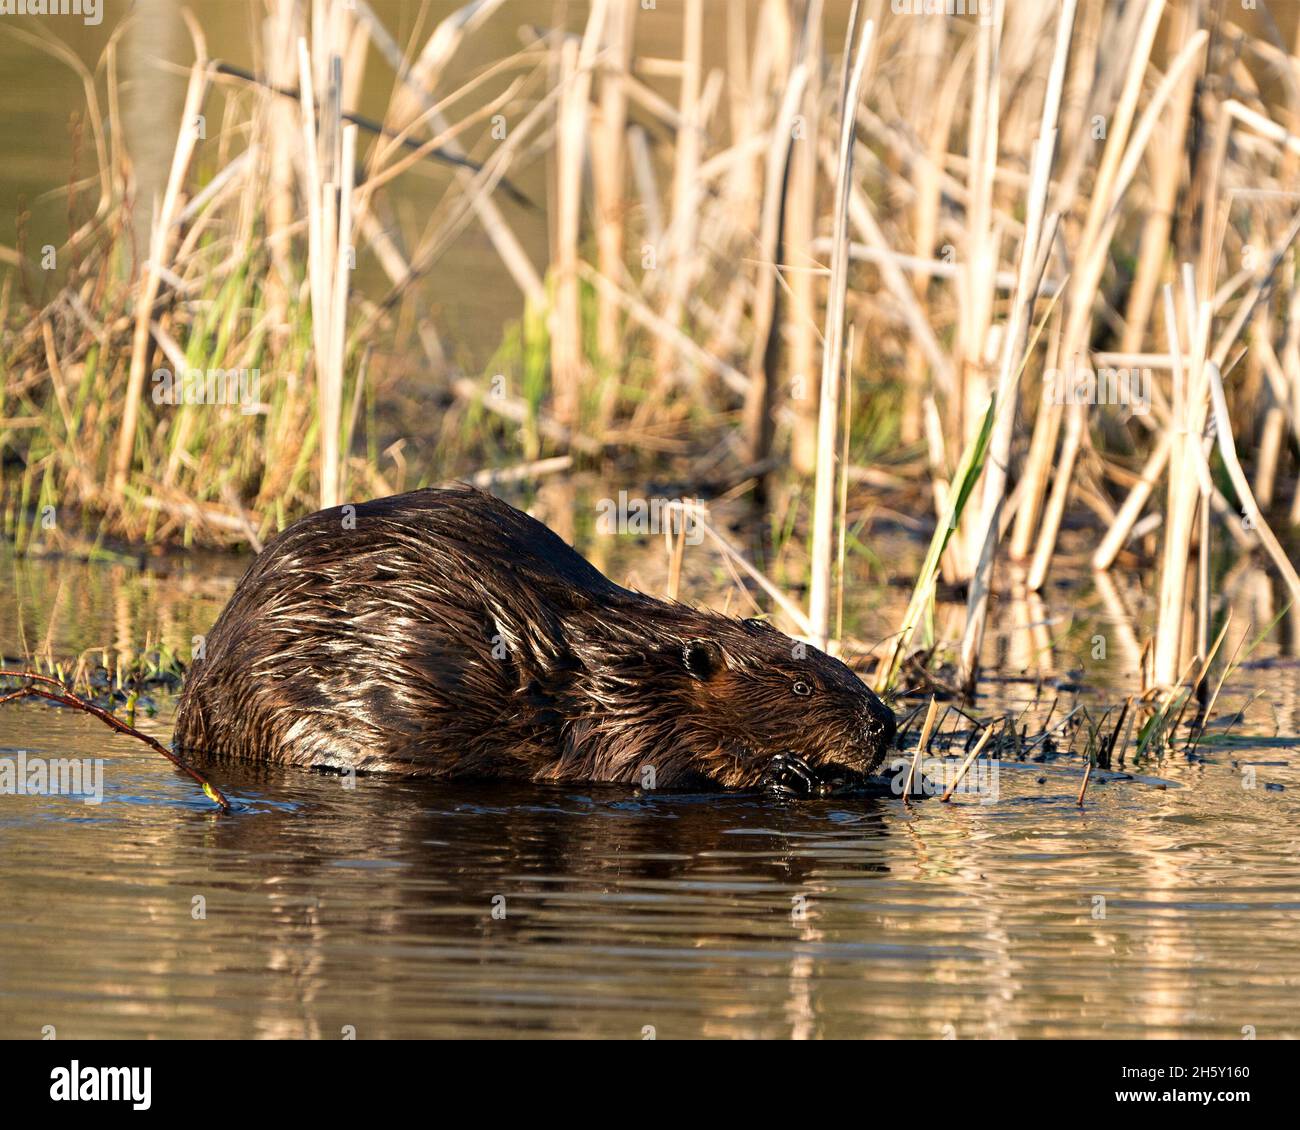 Beaver primo piano profilo vista mangiare albero corteccia di ramoscello nel laghetto con sfondo sfocato fogliame nel suo ambiente e habitat. Immagine. Immagine. Foto Stock